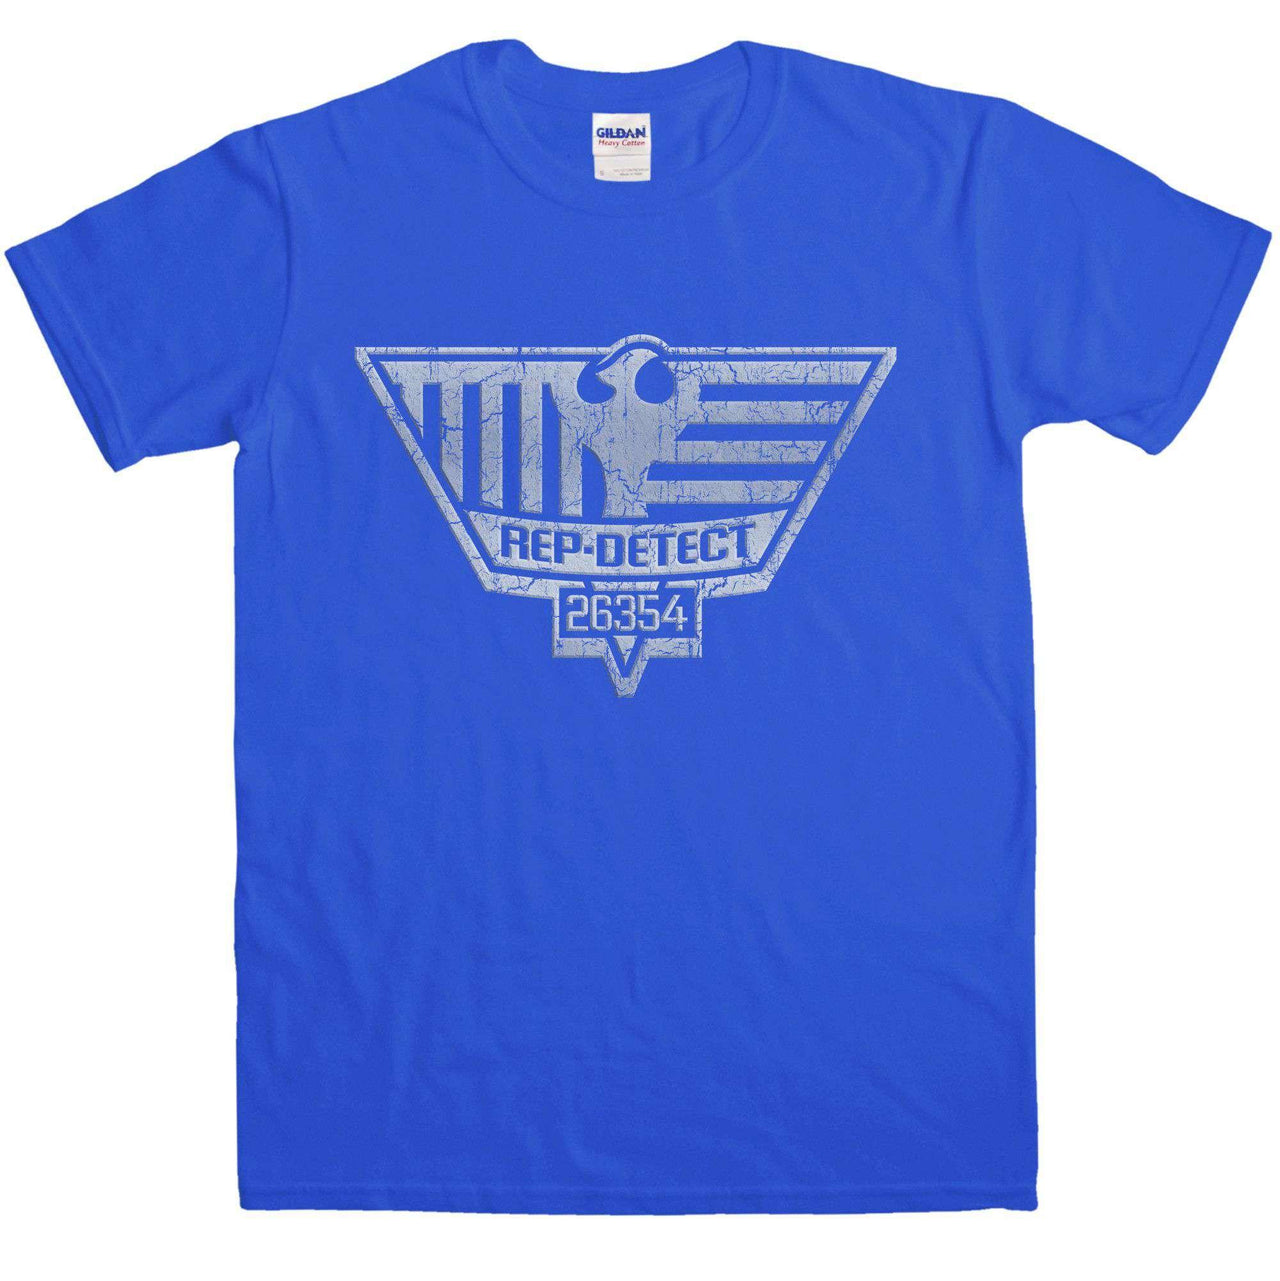 Deckard's Insignia Unisex T-Shirt For Men And Women 8Ball